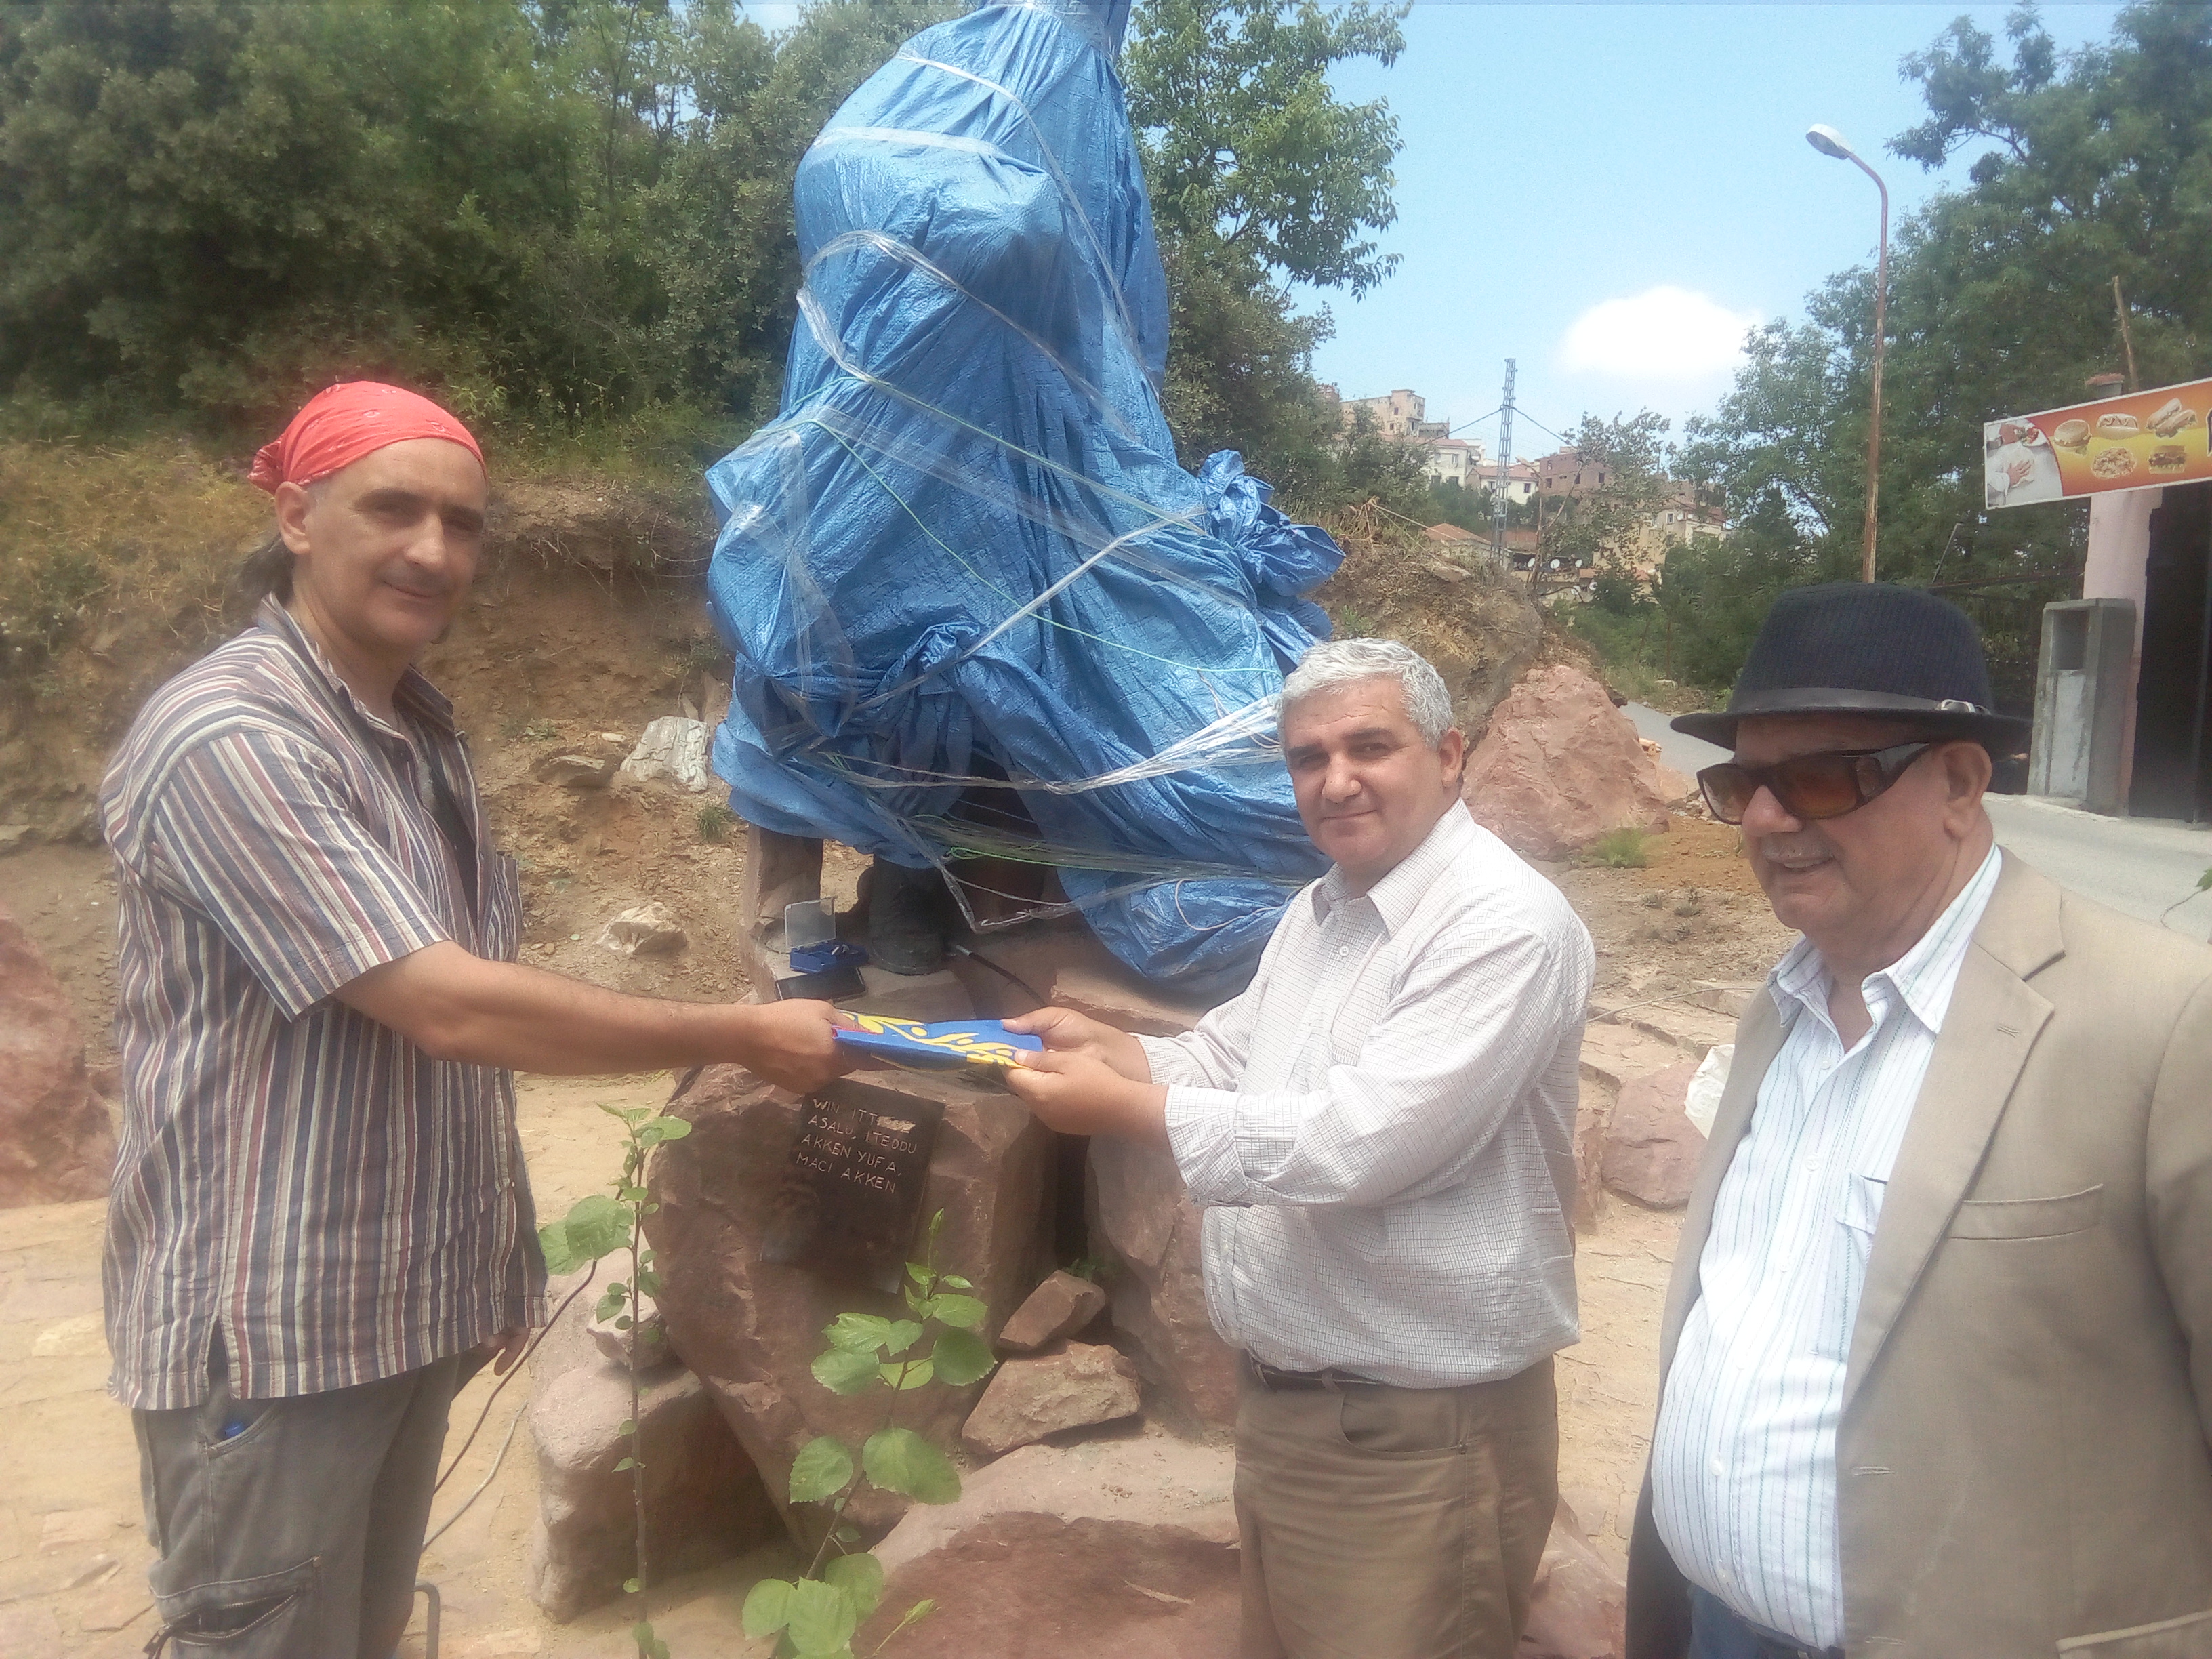  At-Yanni : Le MAK découvre la statue de Mouloud Mammeri et félicite son sculpteur